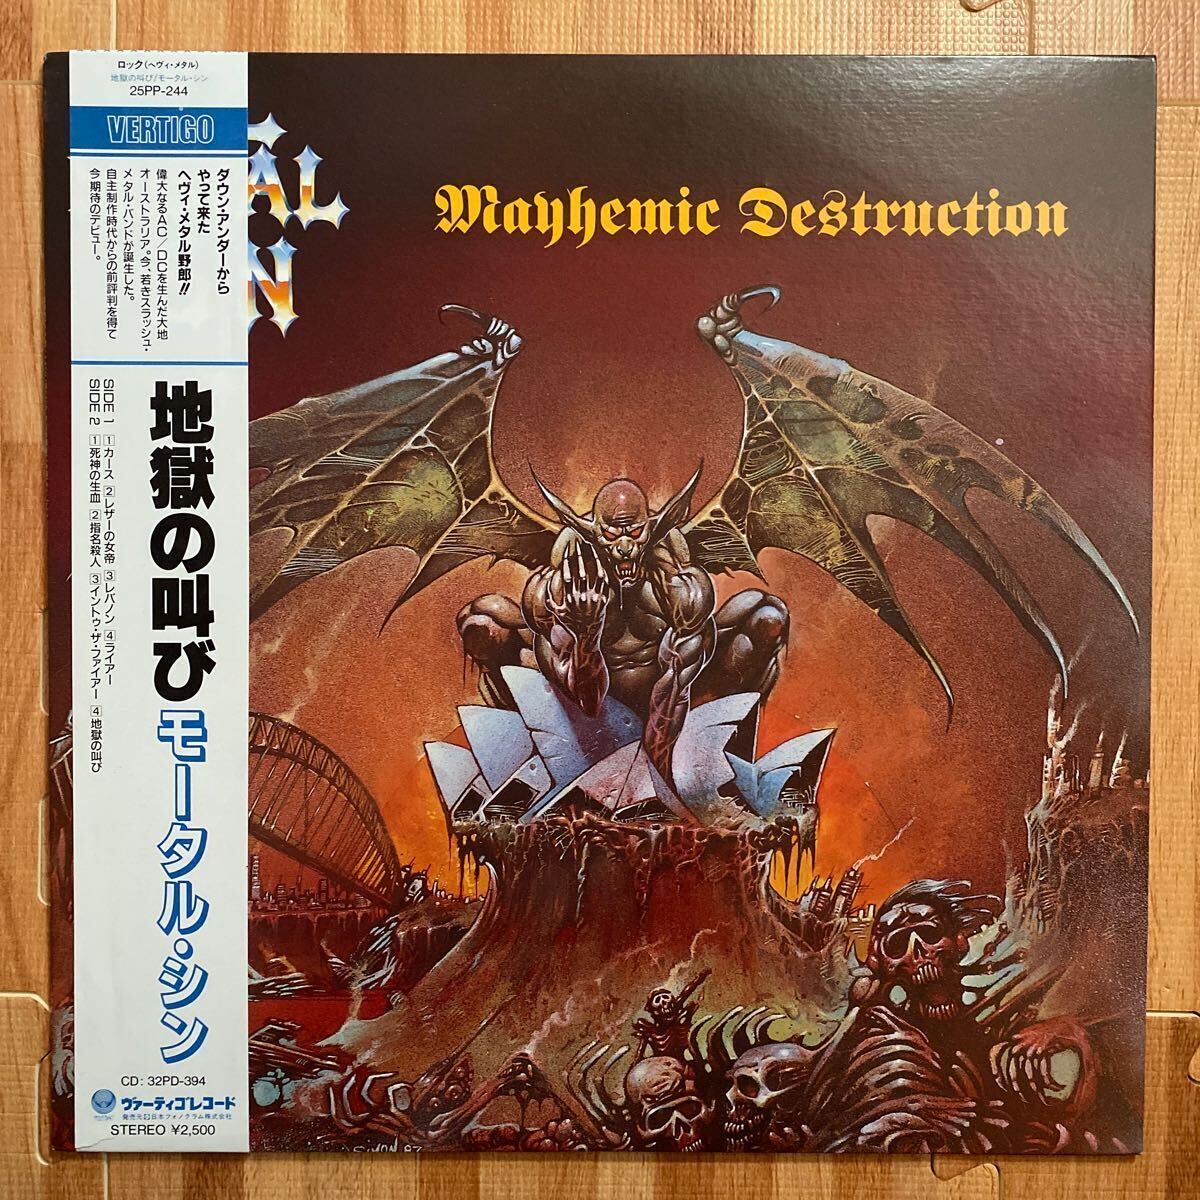 モータル・シン 地獄の叫び MORTAL SIN Mayhemic Destruction レコード LP vinyl 帯付き OBI 25PP-244_画像1